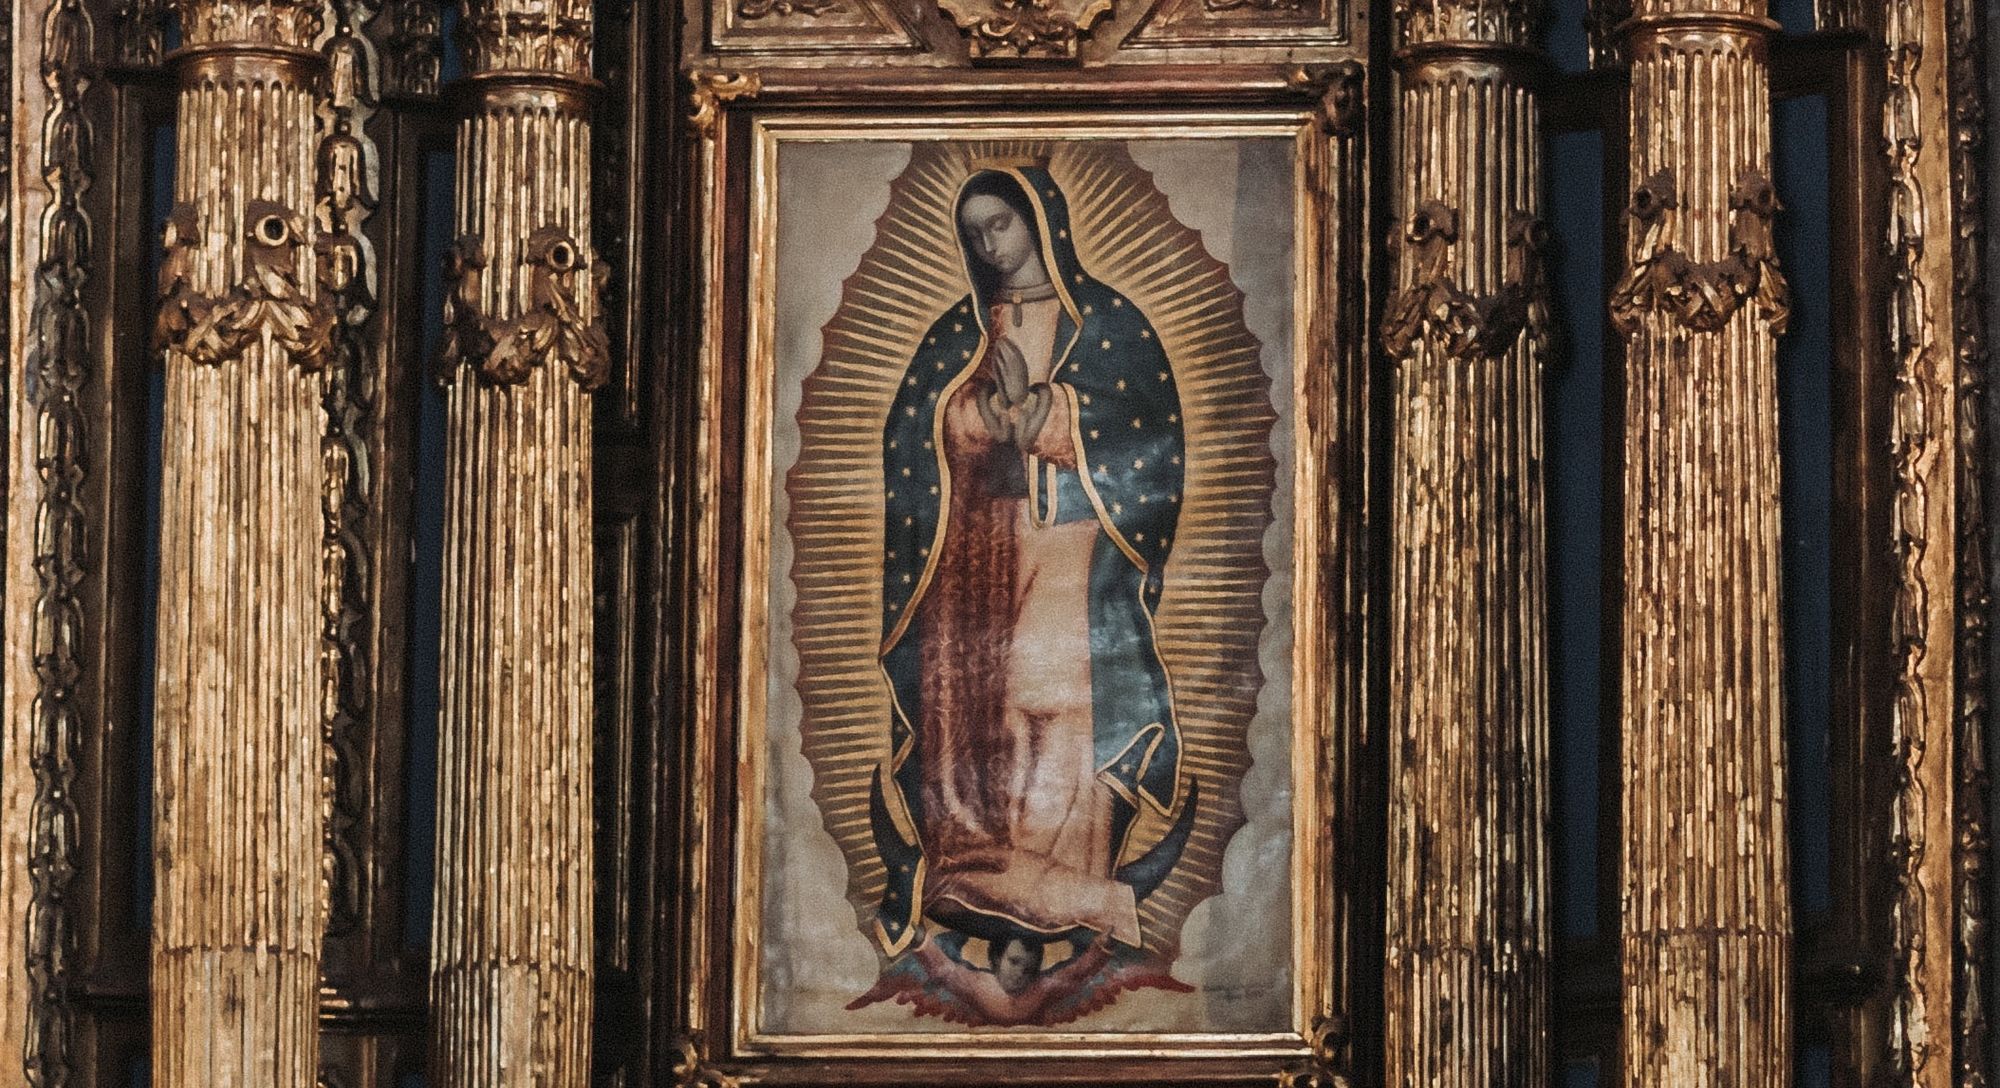 Feast of Our Lady of Guadalupe Events - Eventos de Nuestra Señora de Fatima